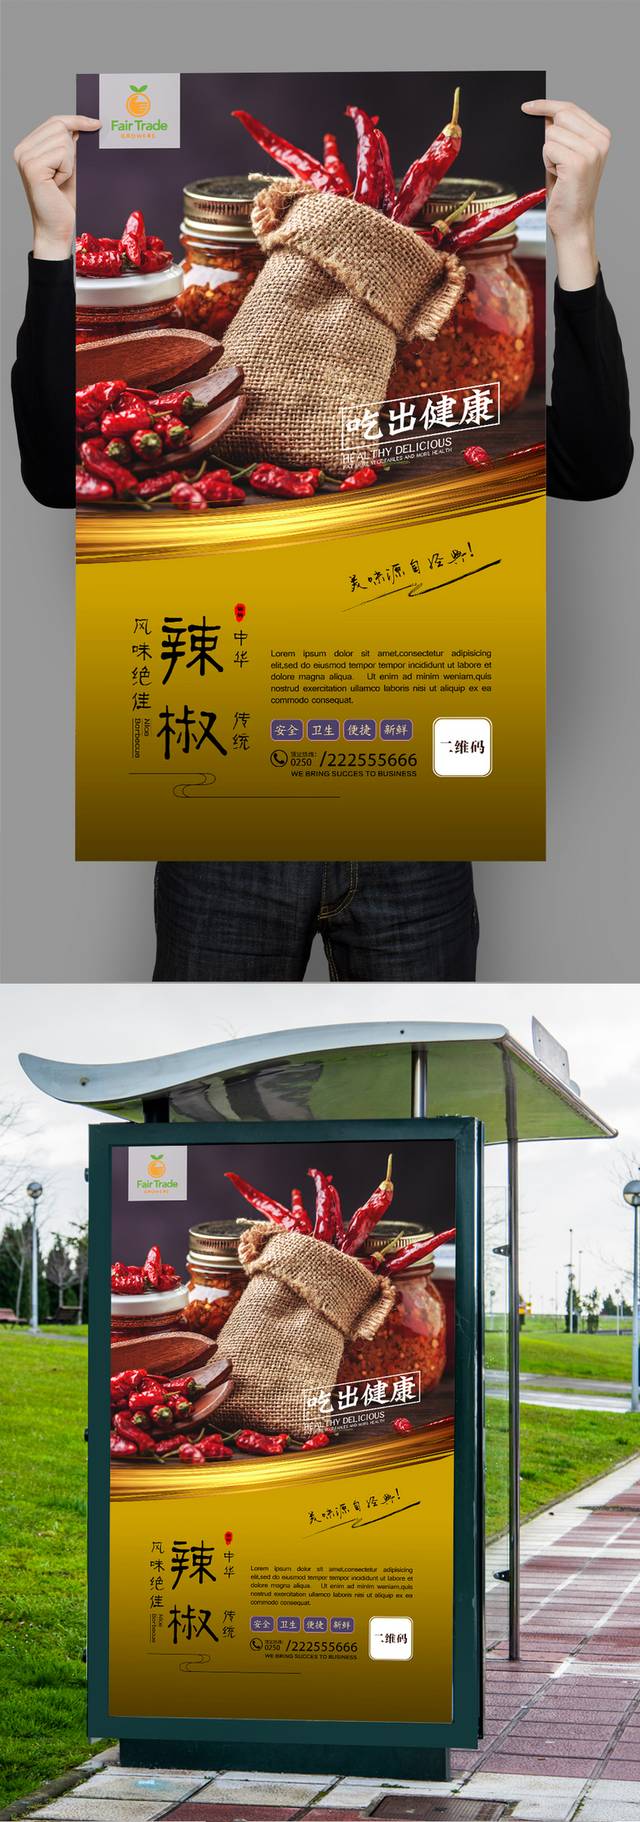 经典辣椒宣传海报设计psd模板